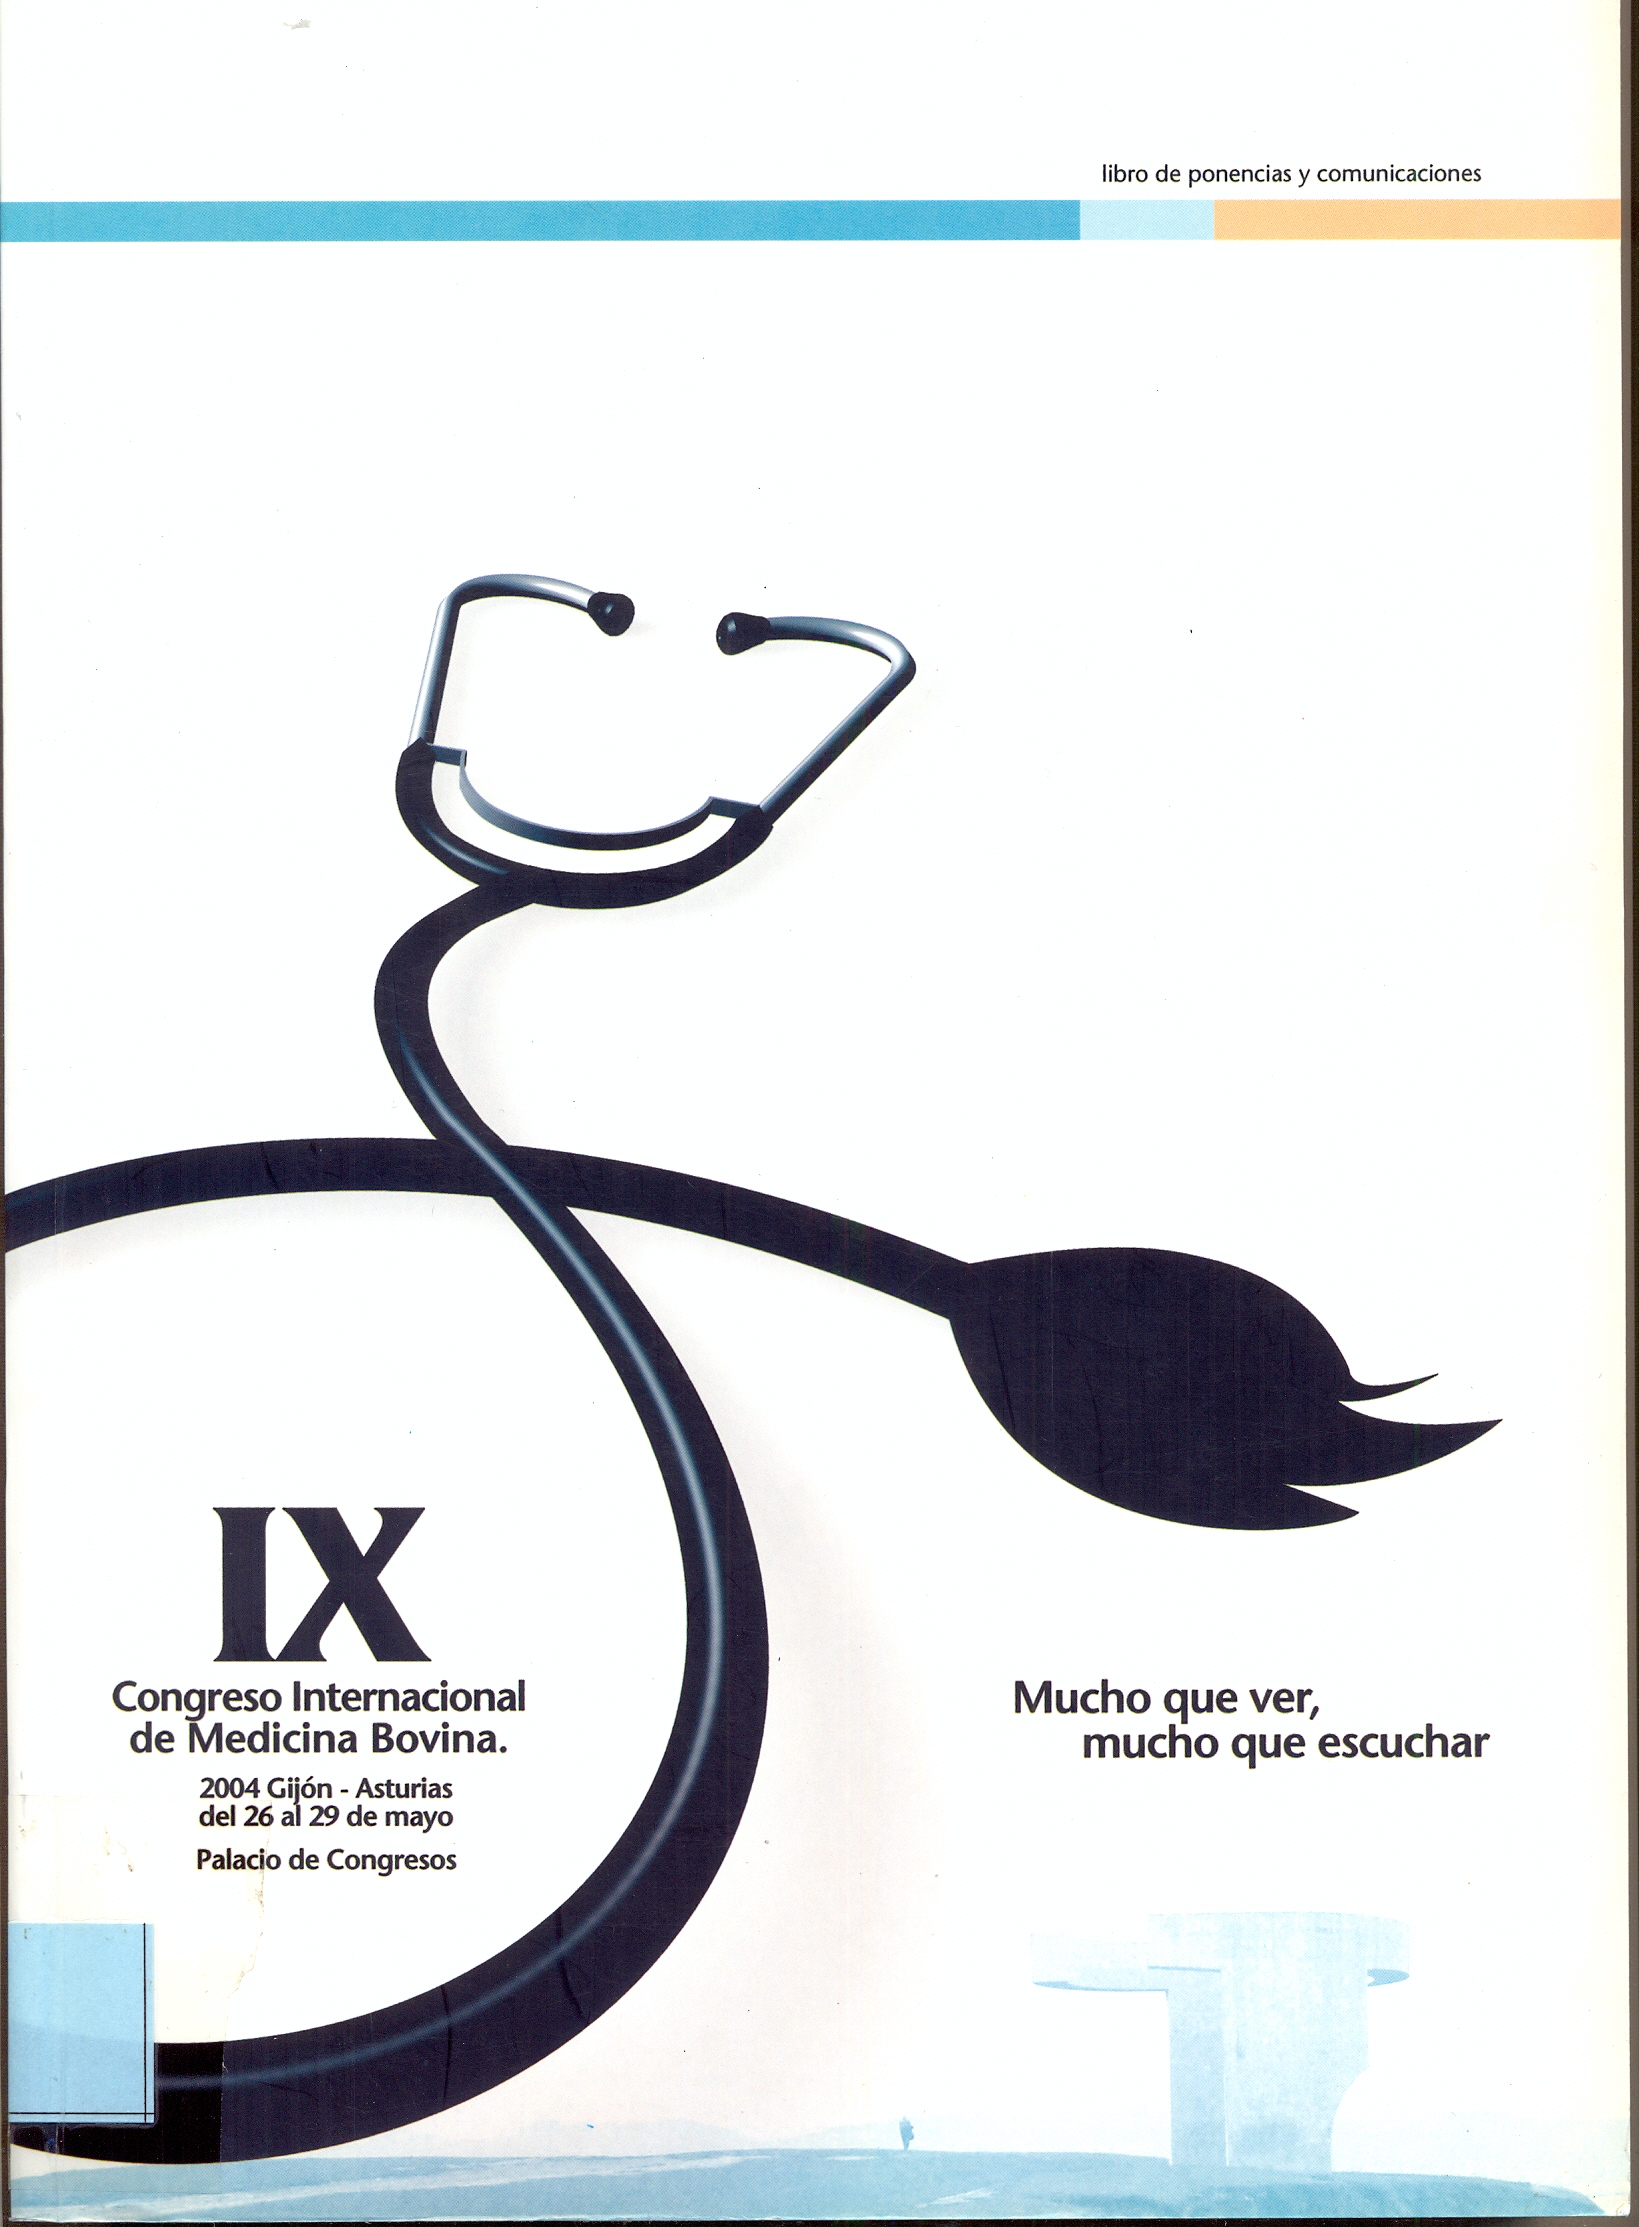 Imagen de portada del libro IX Congreso Internacional de Medicina Bovina, 2004, Gijón, Asturias, del 26 al 29 de mayo